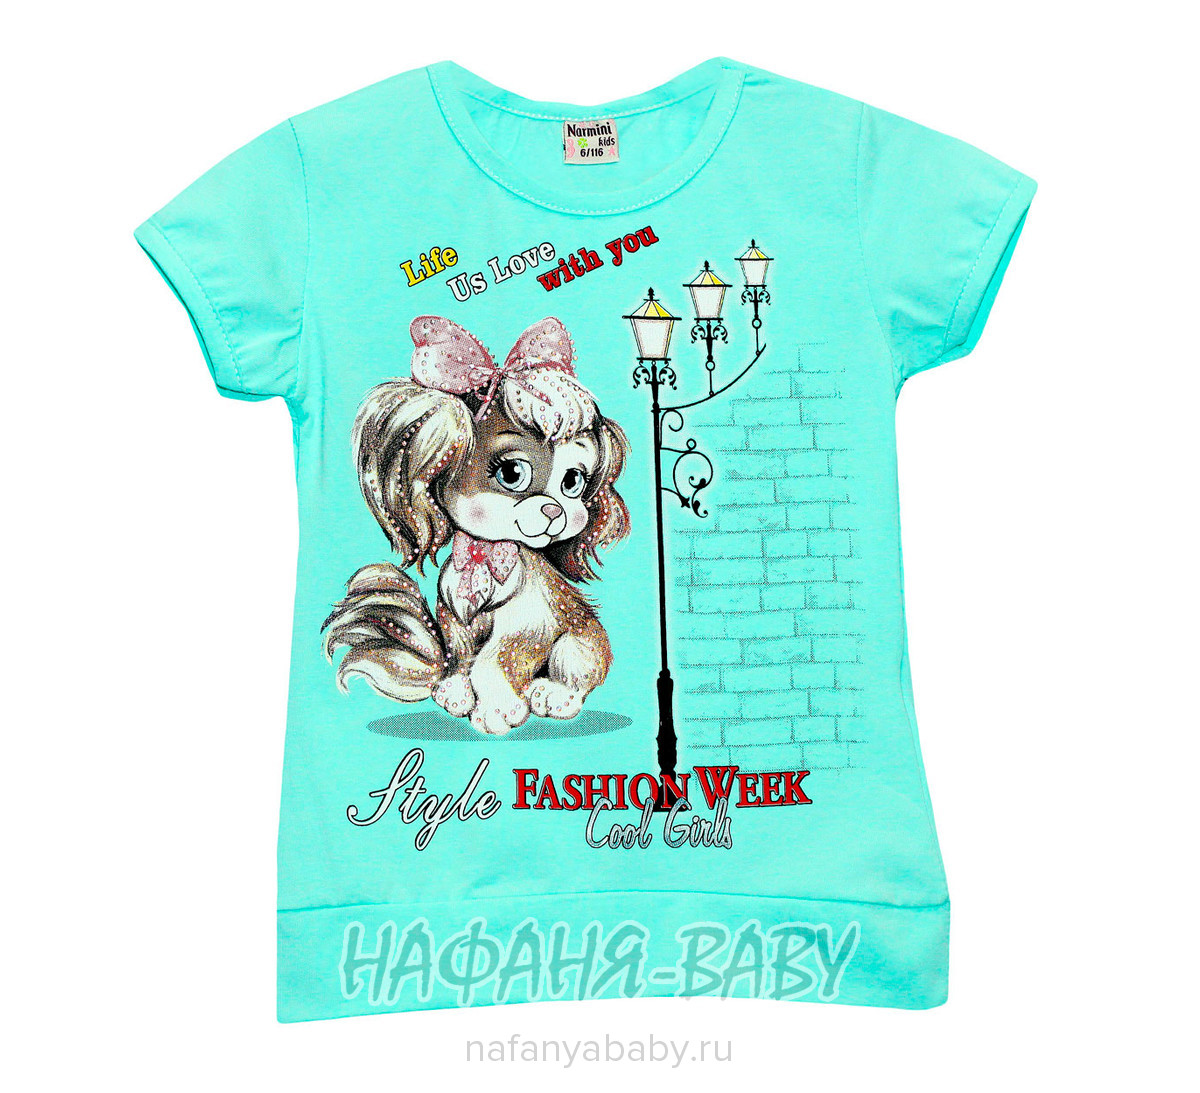 Детская футболка, артикул 5544 NARMINI арт: 5544, 1-4 года, 5-9 лет, цвет аквамариновый, оптом Турция